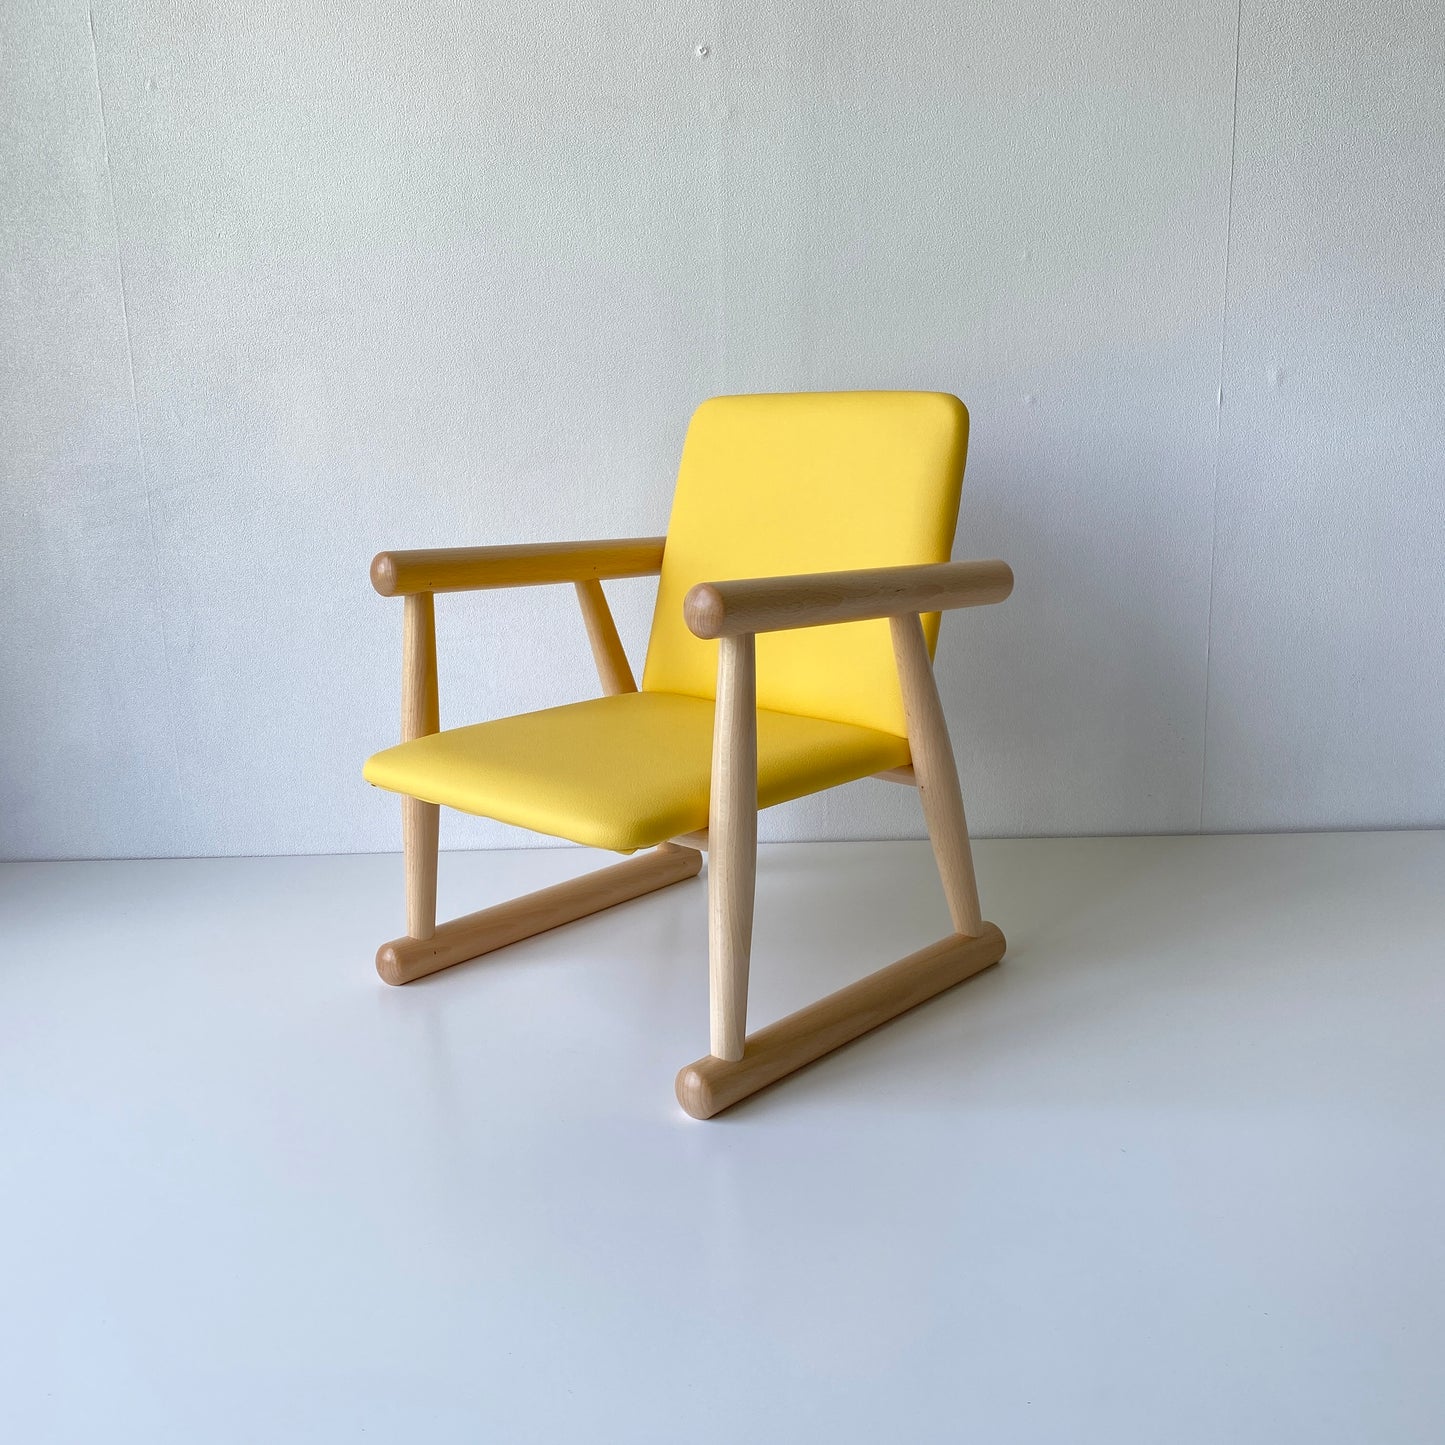 秋田木工 キッズチェア 子供椅子 NO.100R ブナ材 ナチュラル色 黄色 イエロー 合成皮革 曲木家具